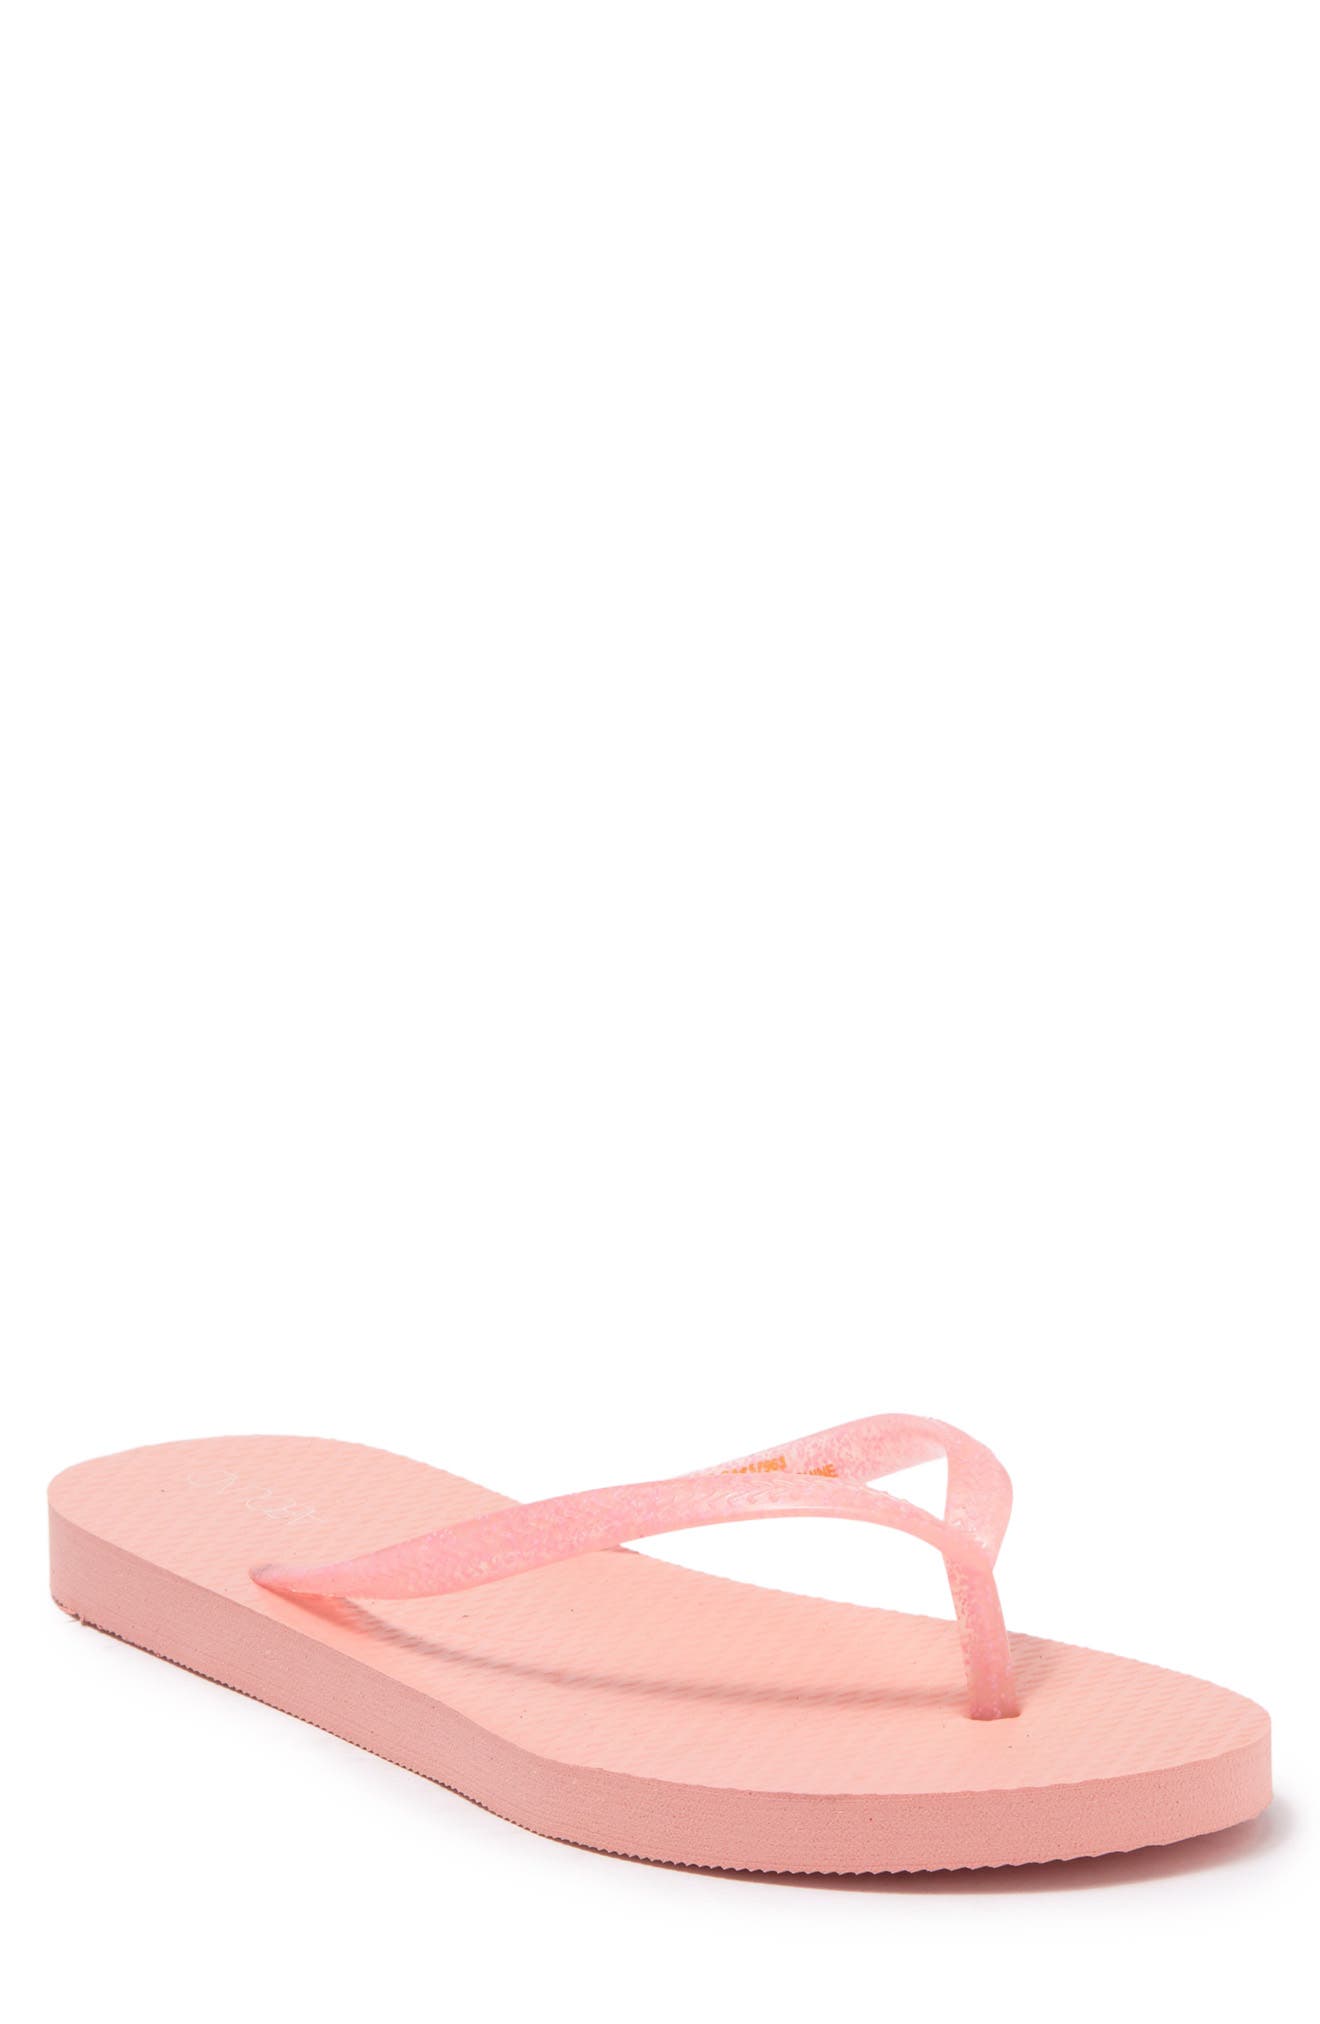 Abound Leyo Flip Flop In Light/pastel Pink5